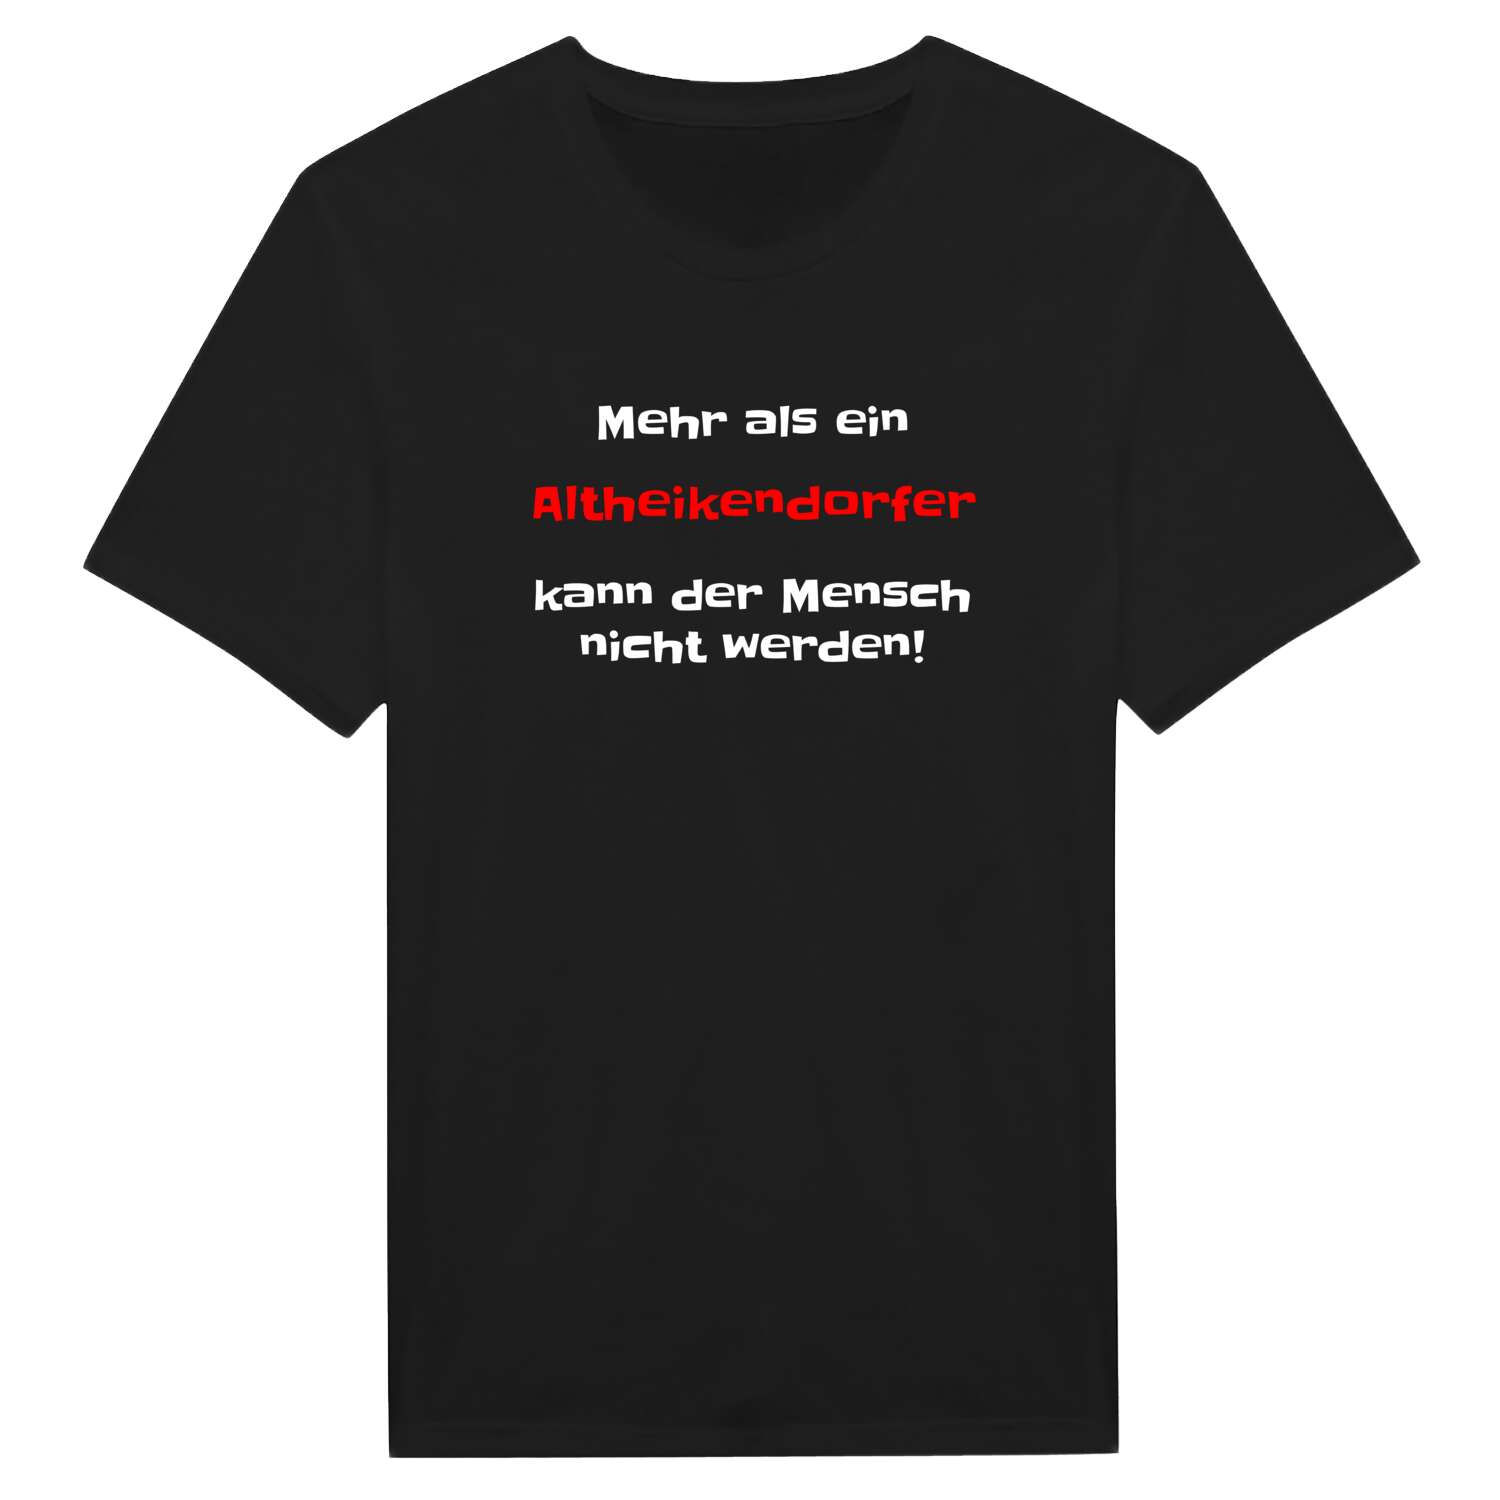 Altheikendorf T-Shirt »Mehr als ein«